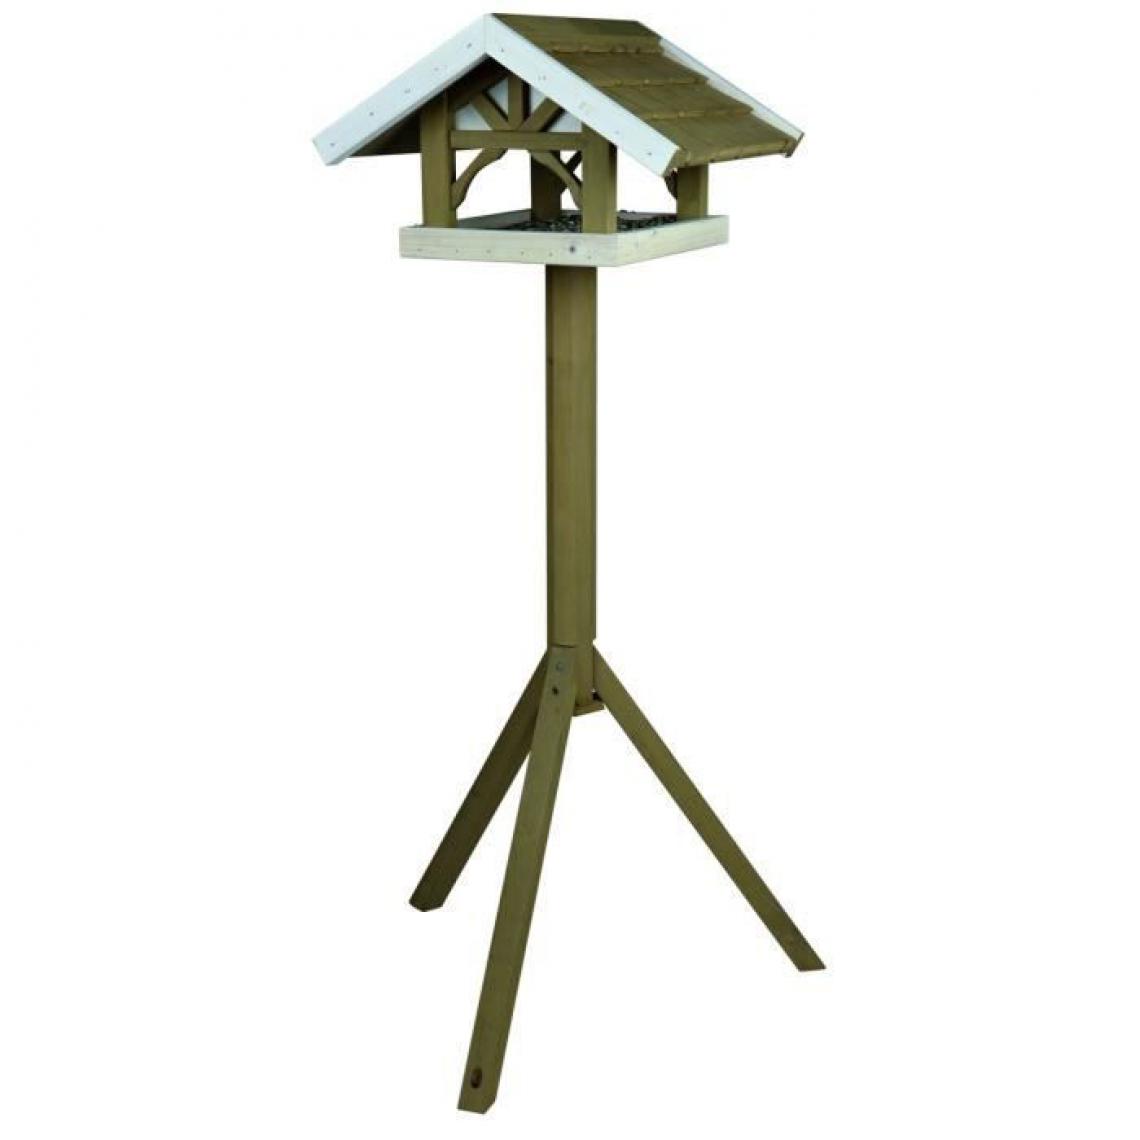 Icaverne - NICHOIR - NID NATURA Mangeoire oiseaux avec pied 45 × 28 × 44 cm/1,25 m gris blanc - Nichoir pour oiseaux du ciel